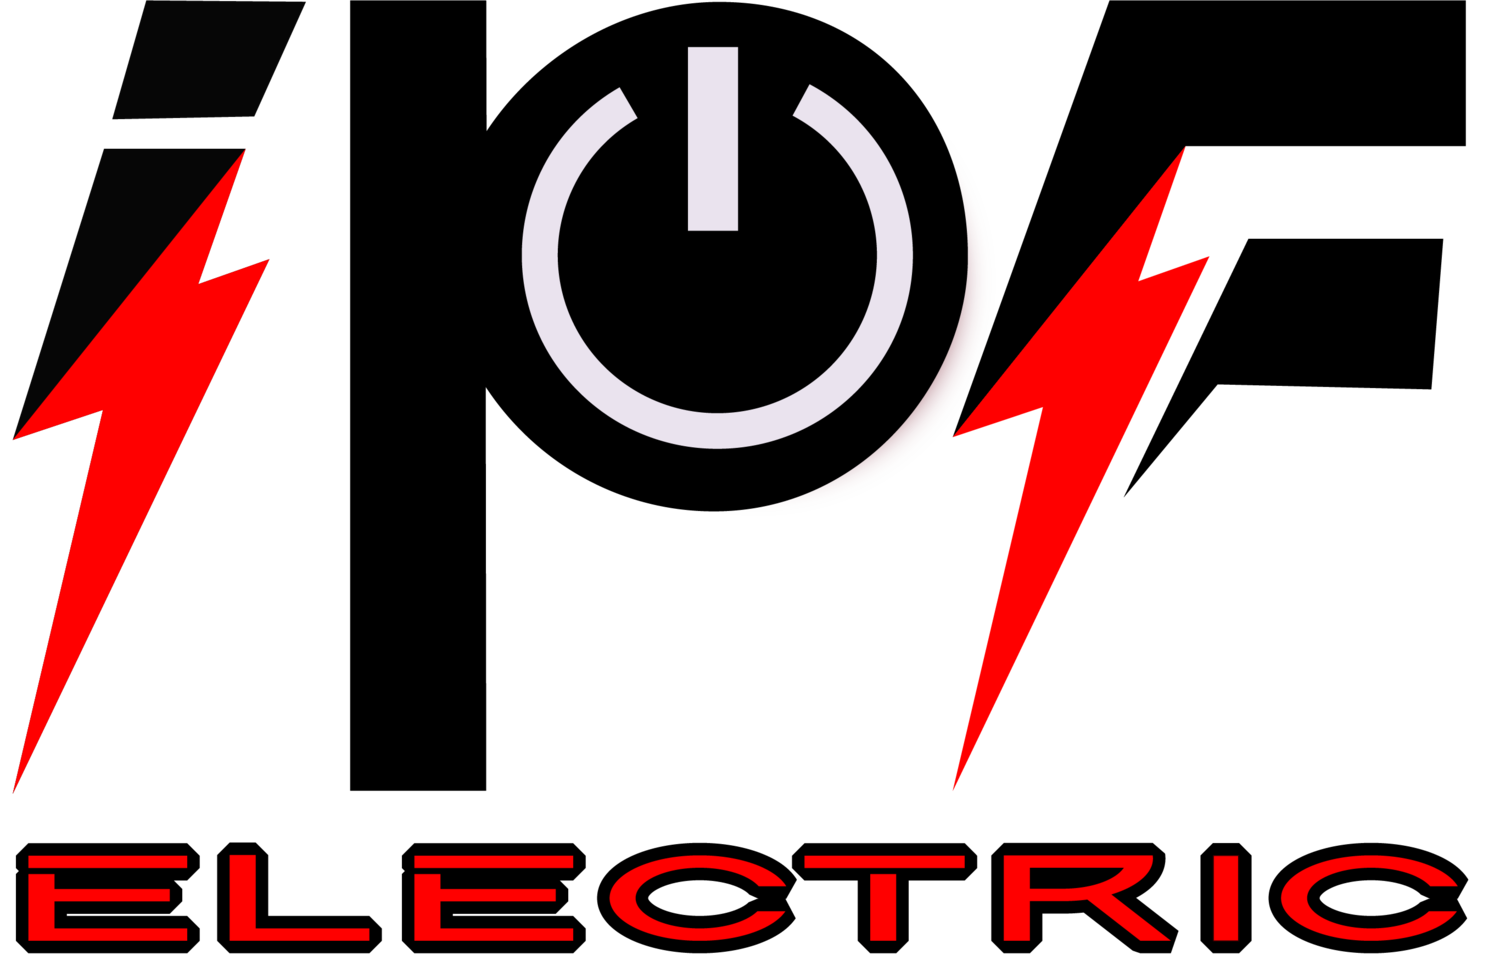 I P F Electric